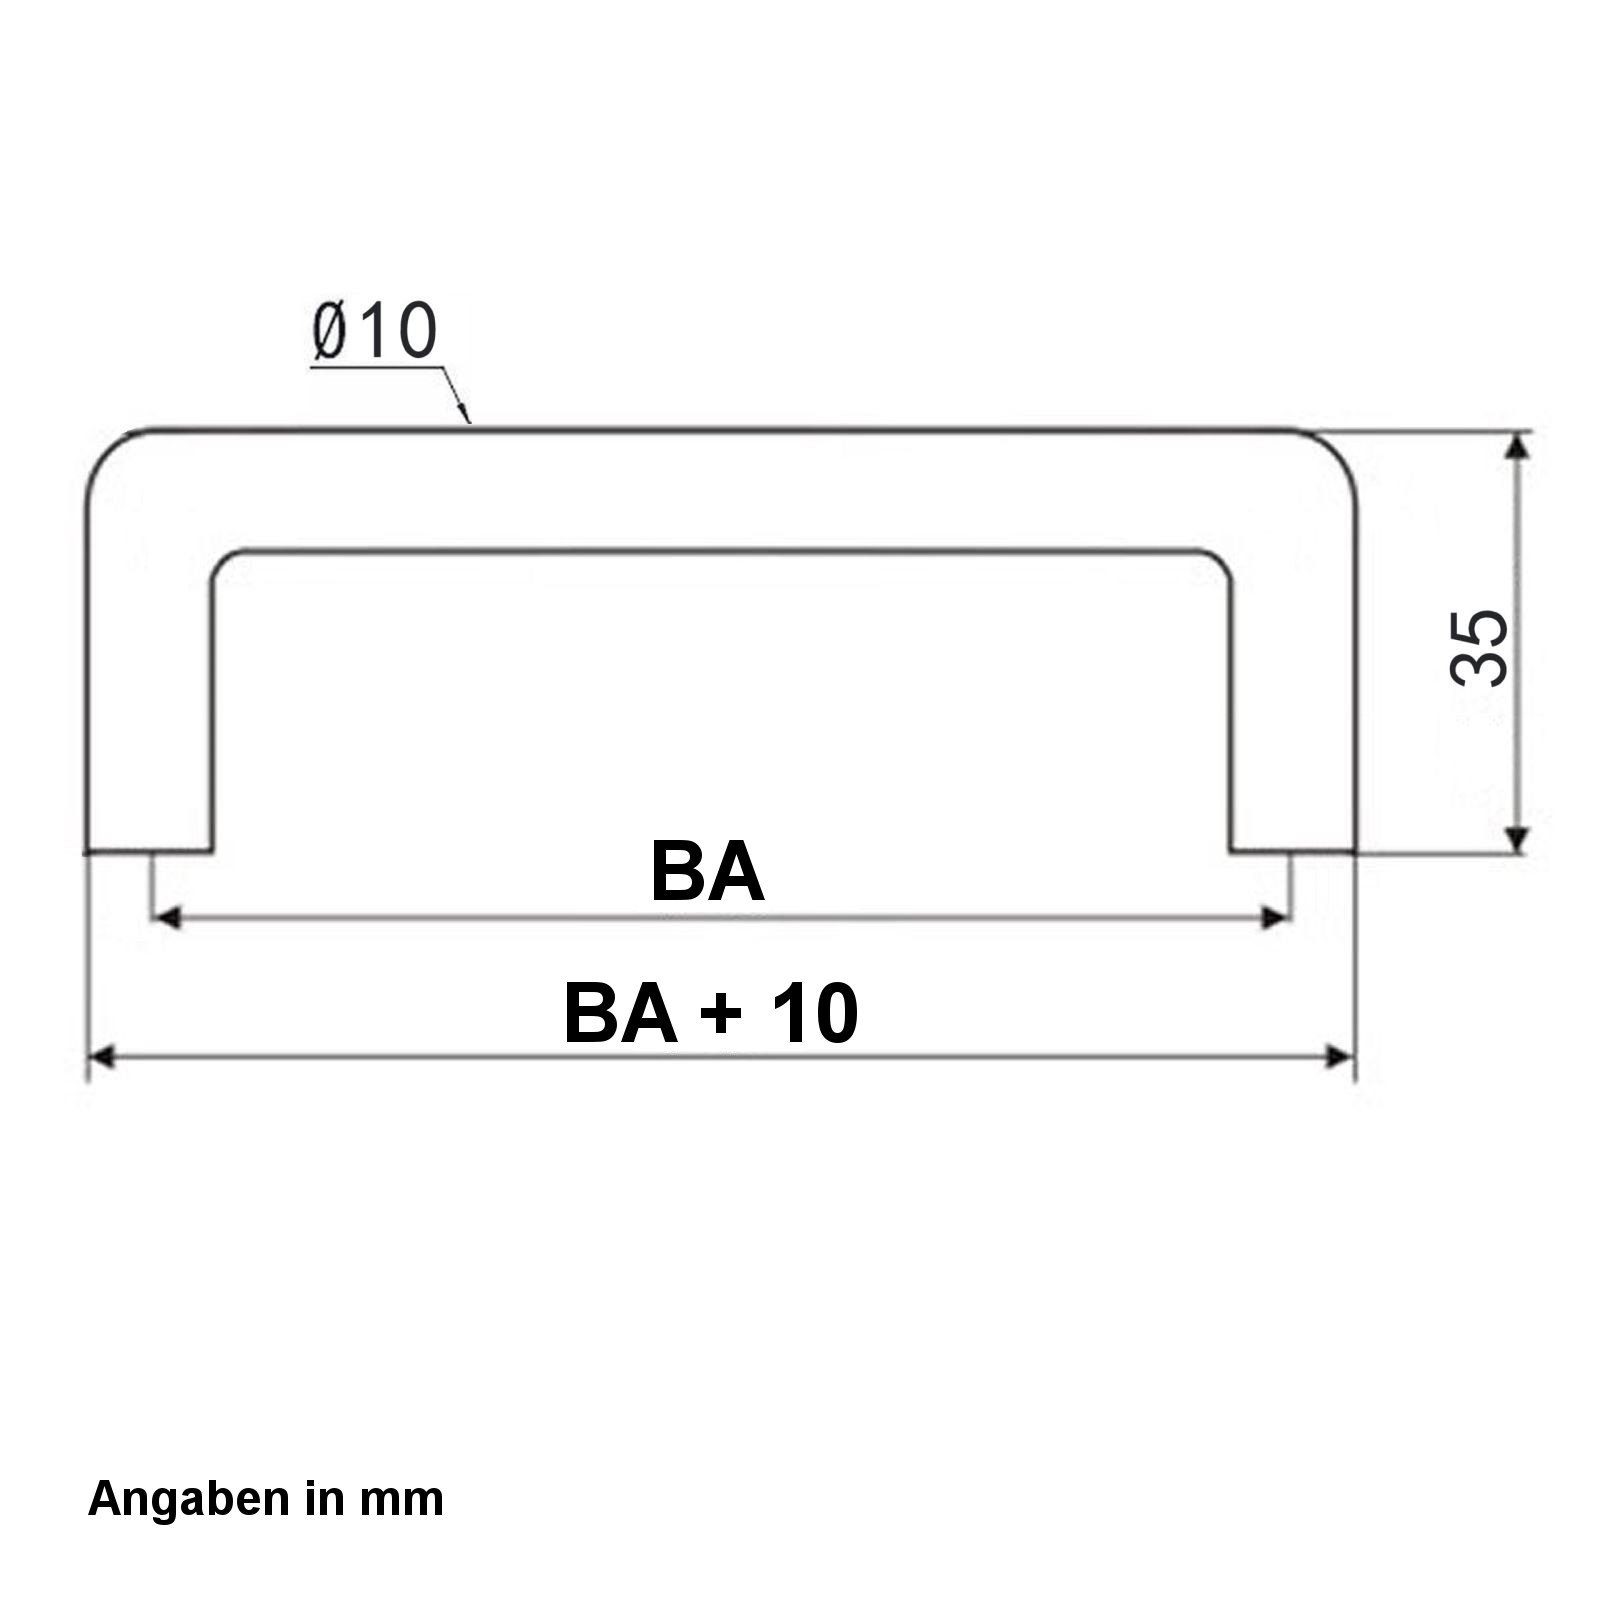 320 BG03 mm, BA incl. - Bügelgriff Schubladengriff Möbelgriff Griff 64 SO-TECH® Schrankgriff Schrauben -